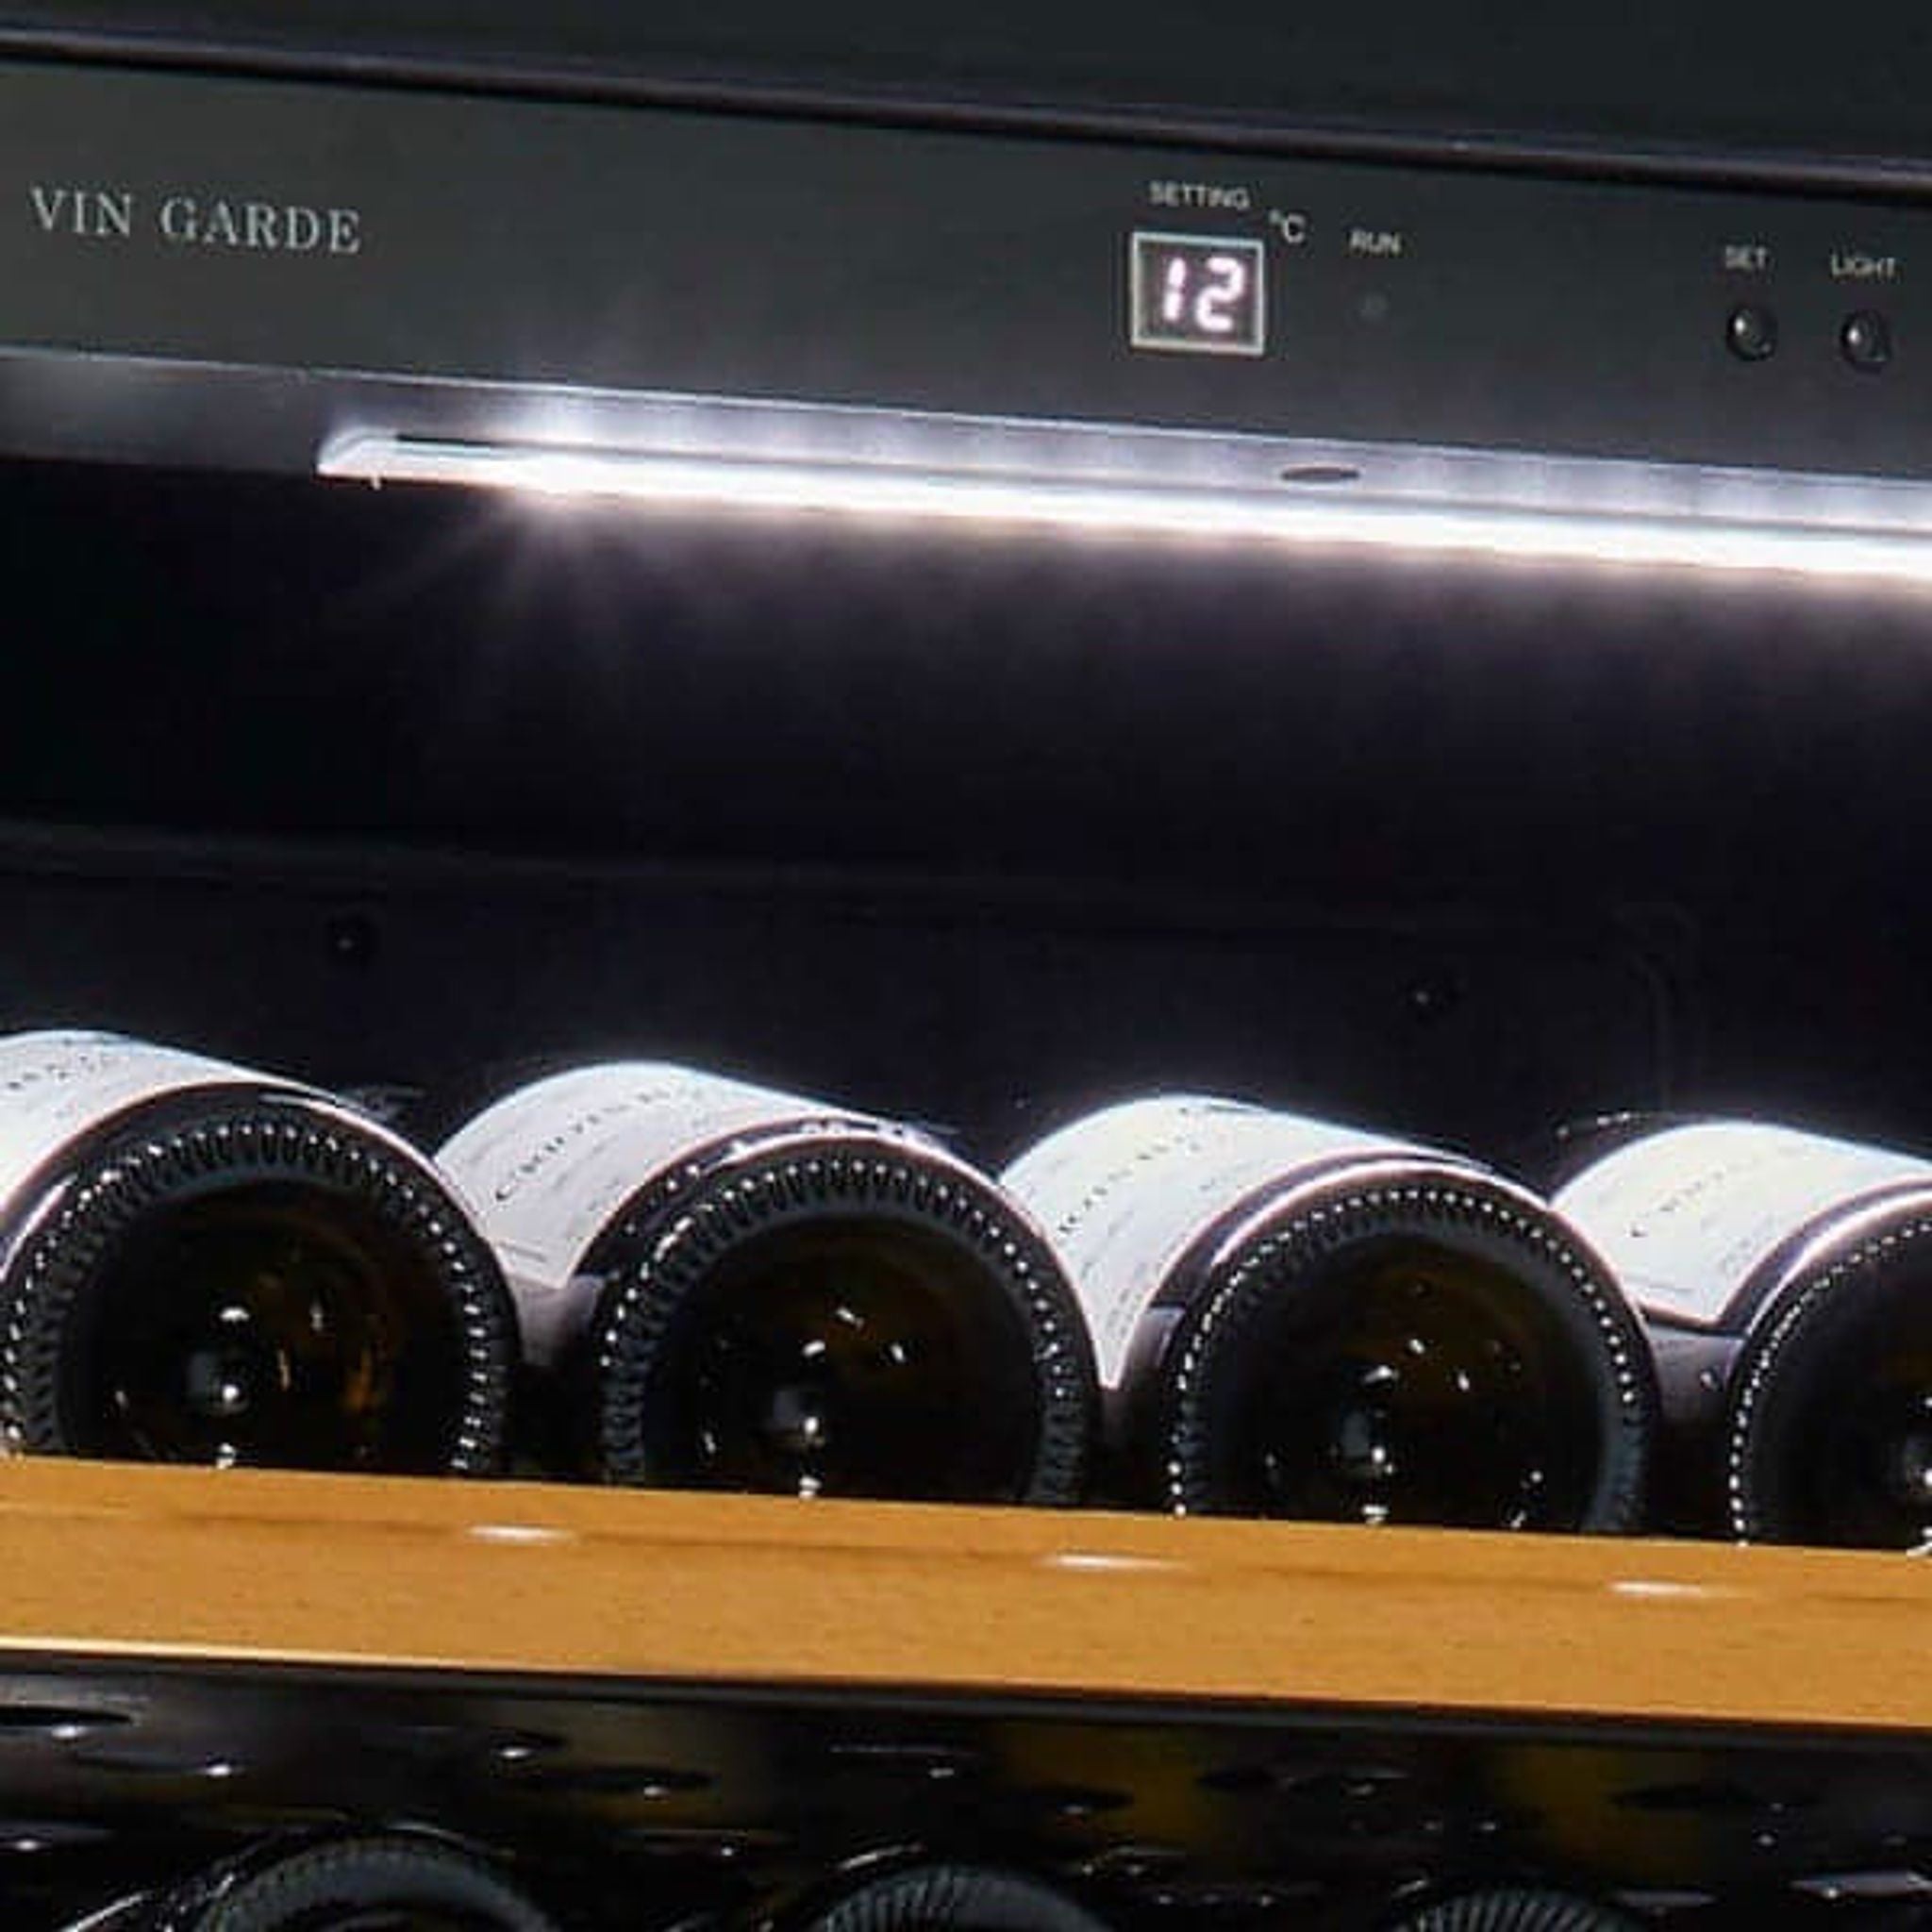 VIN GARDE POMMARD 160 - Dual Zone - Freestanding / Built in Wine Fridge - Stainless